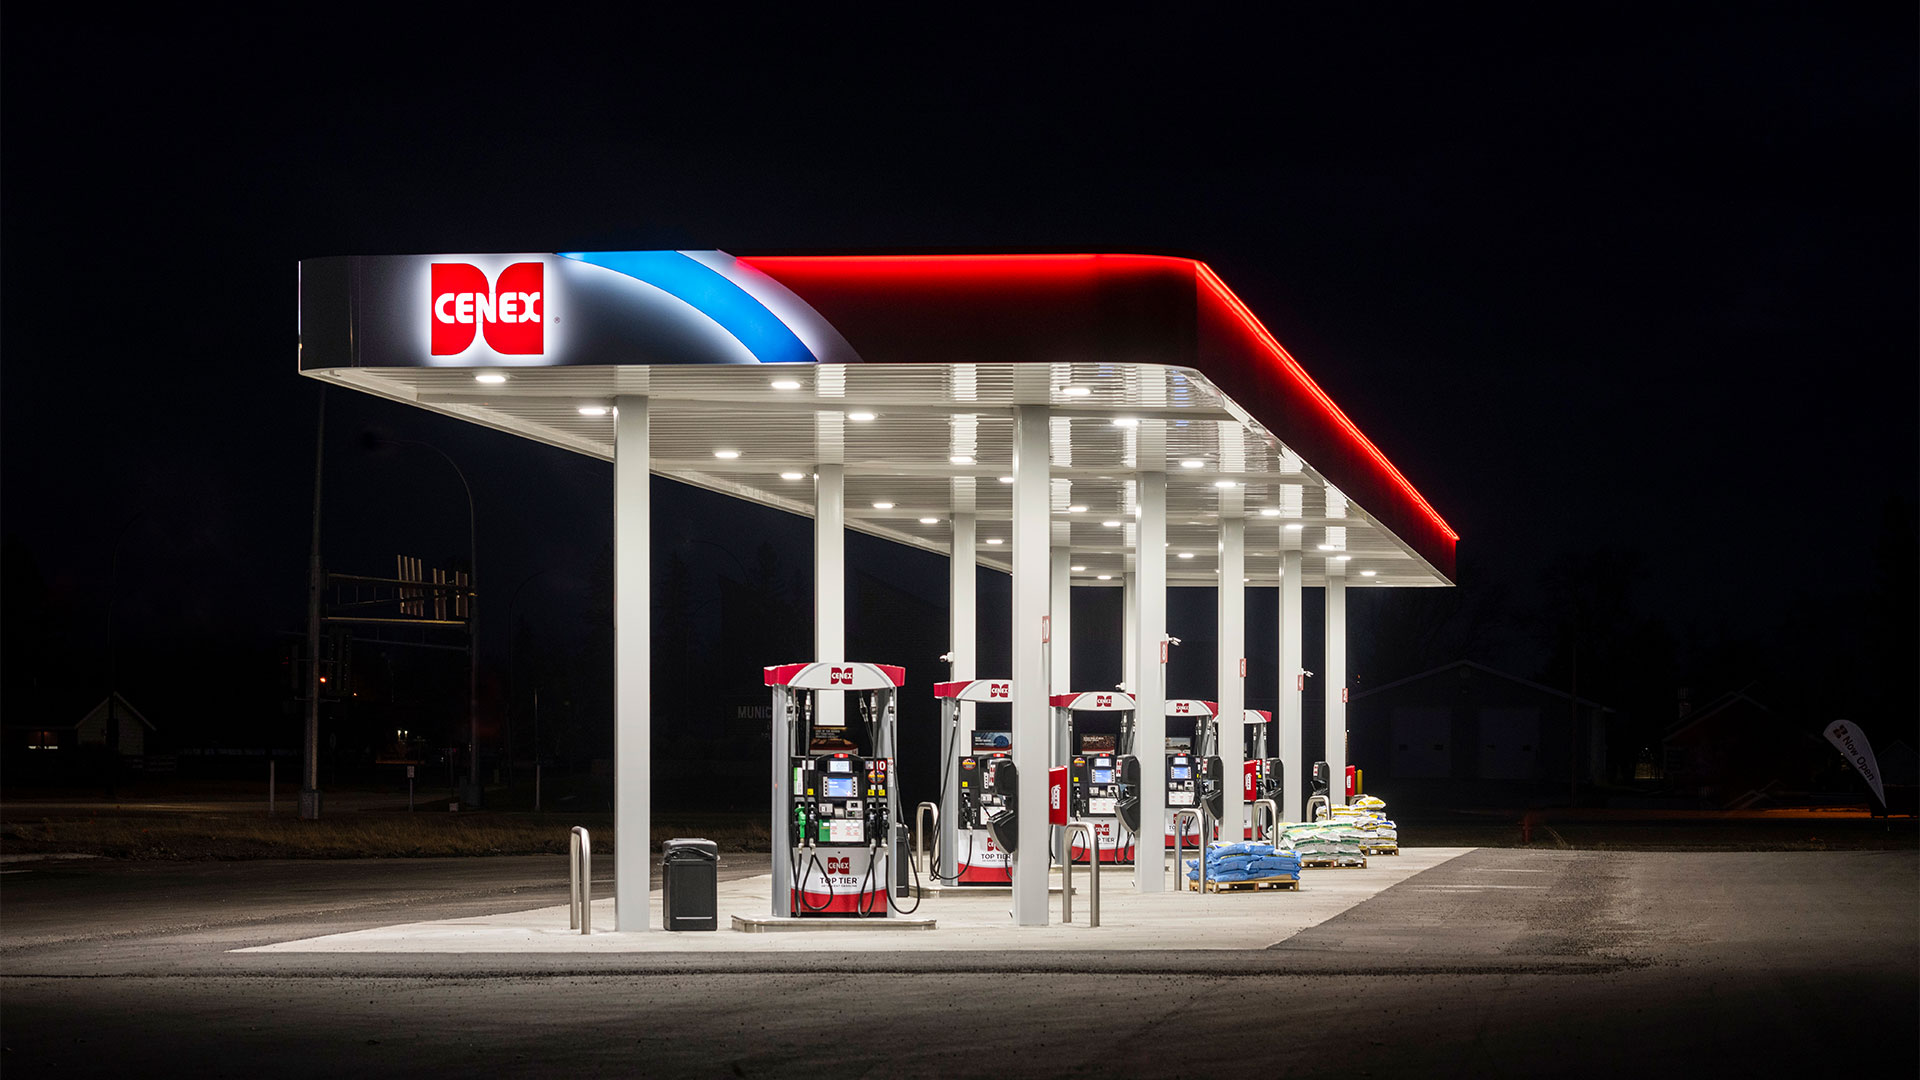 Halo image night gas station cenex lit